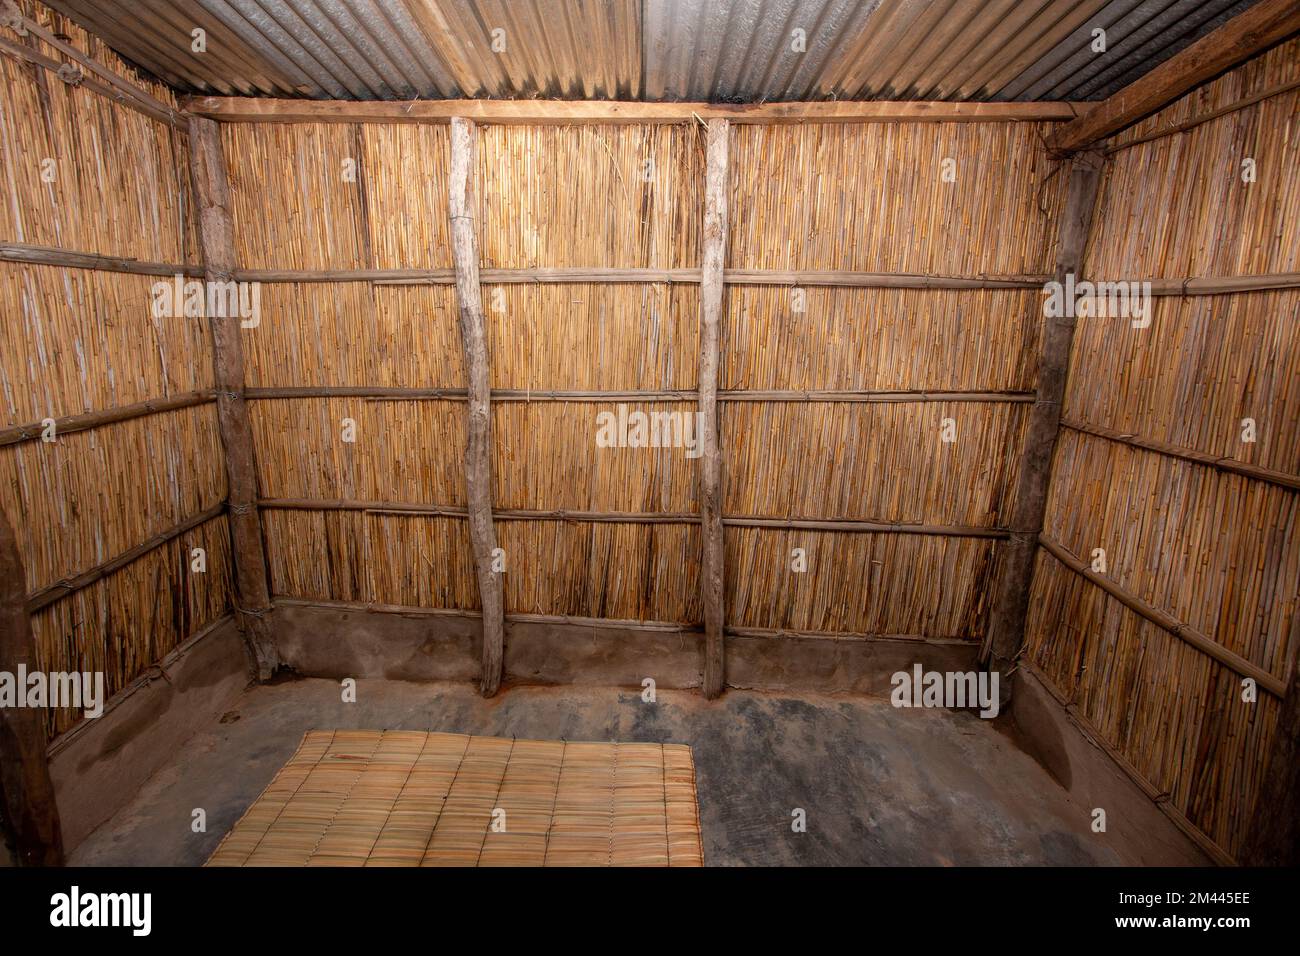 Vue intérieure d'une chambre à coucher de maison en roseau, commune dans certaines parties de l'Afrique, avec des murs en roseau, des planchers en béton brûlé et un toit en tôle de zinc Banque D'Images